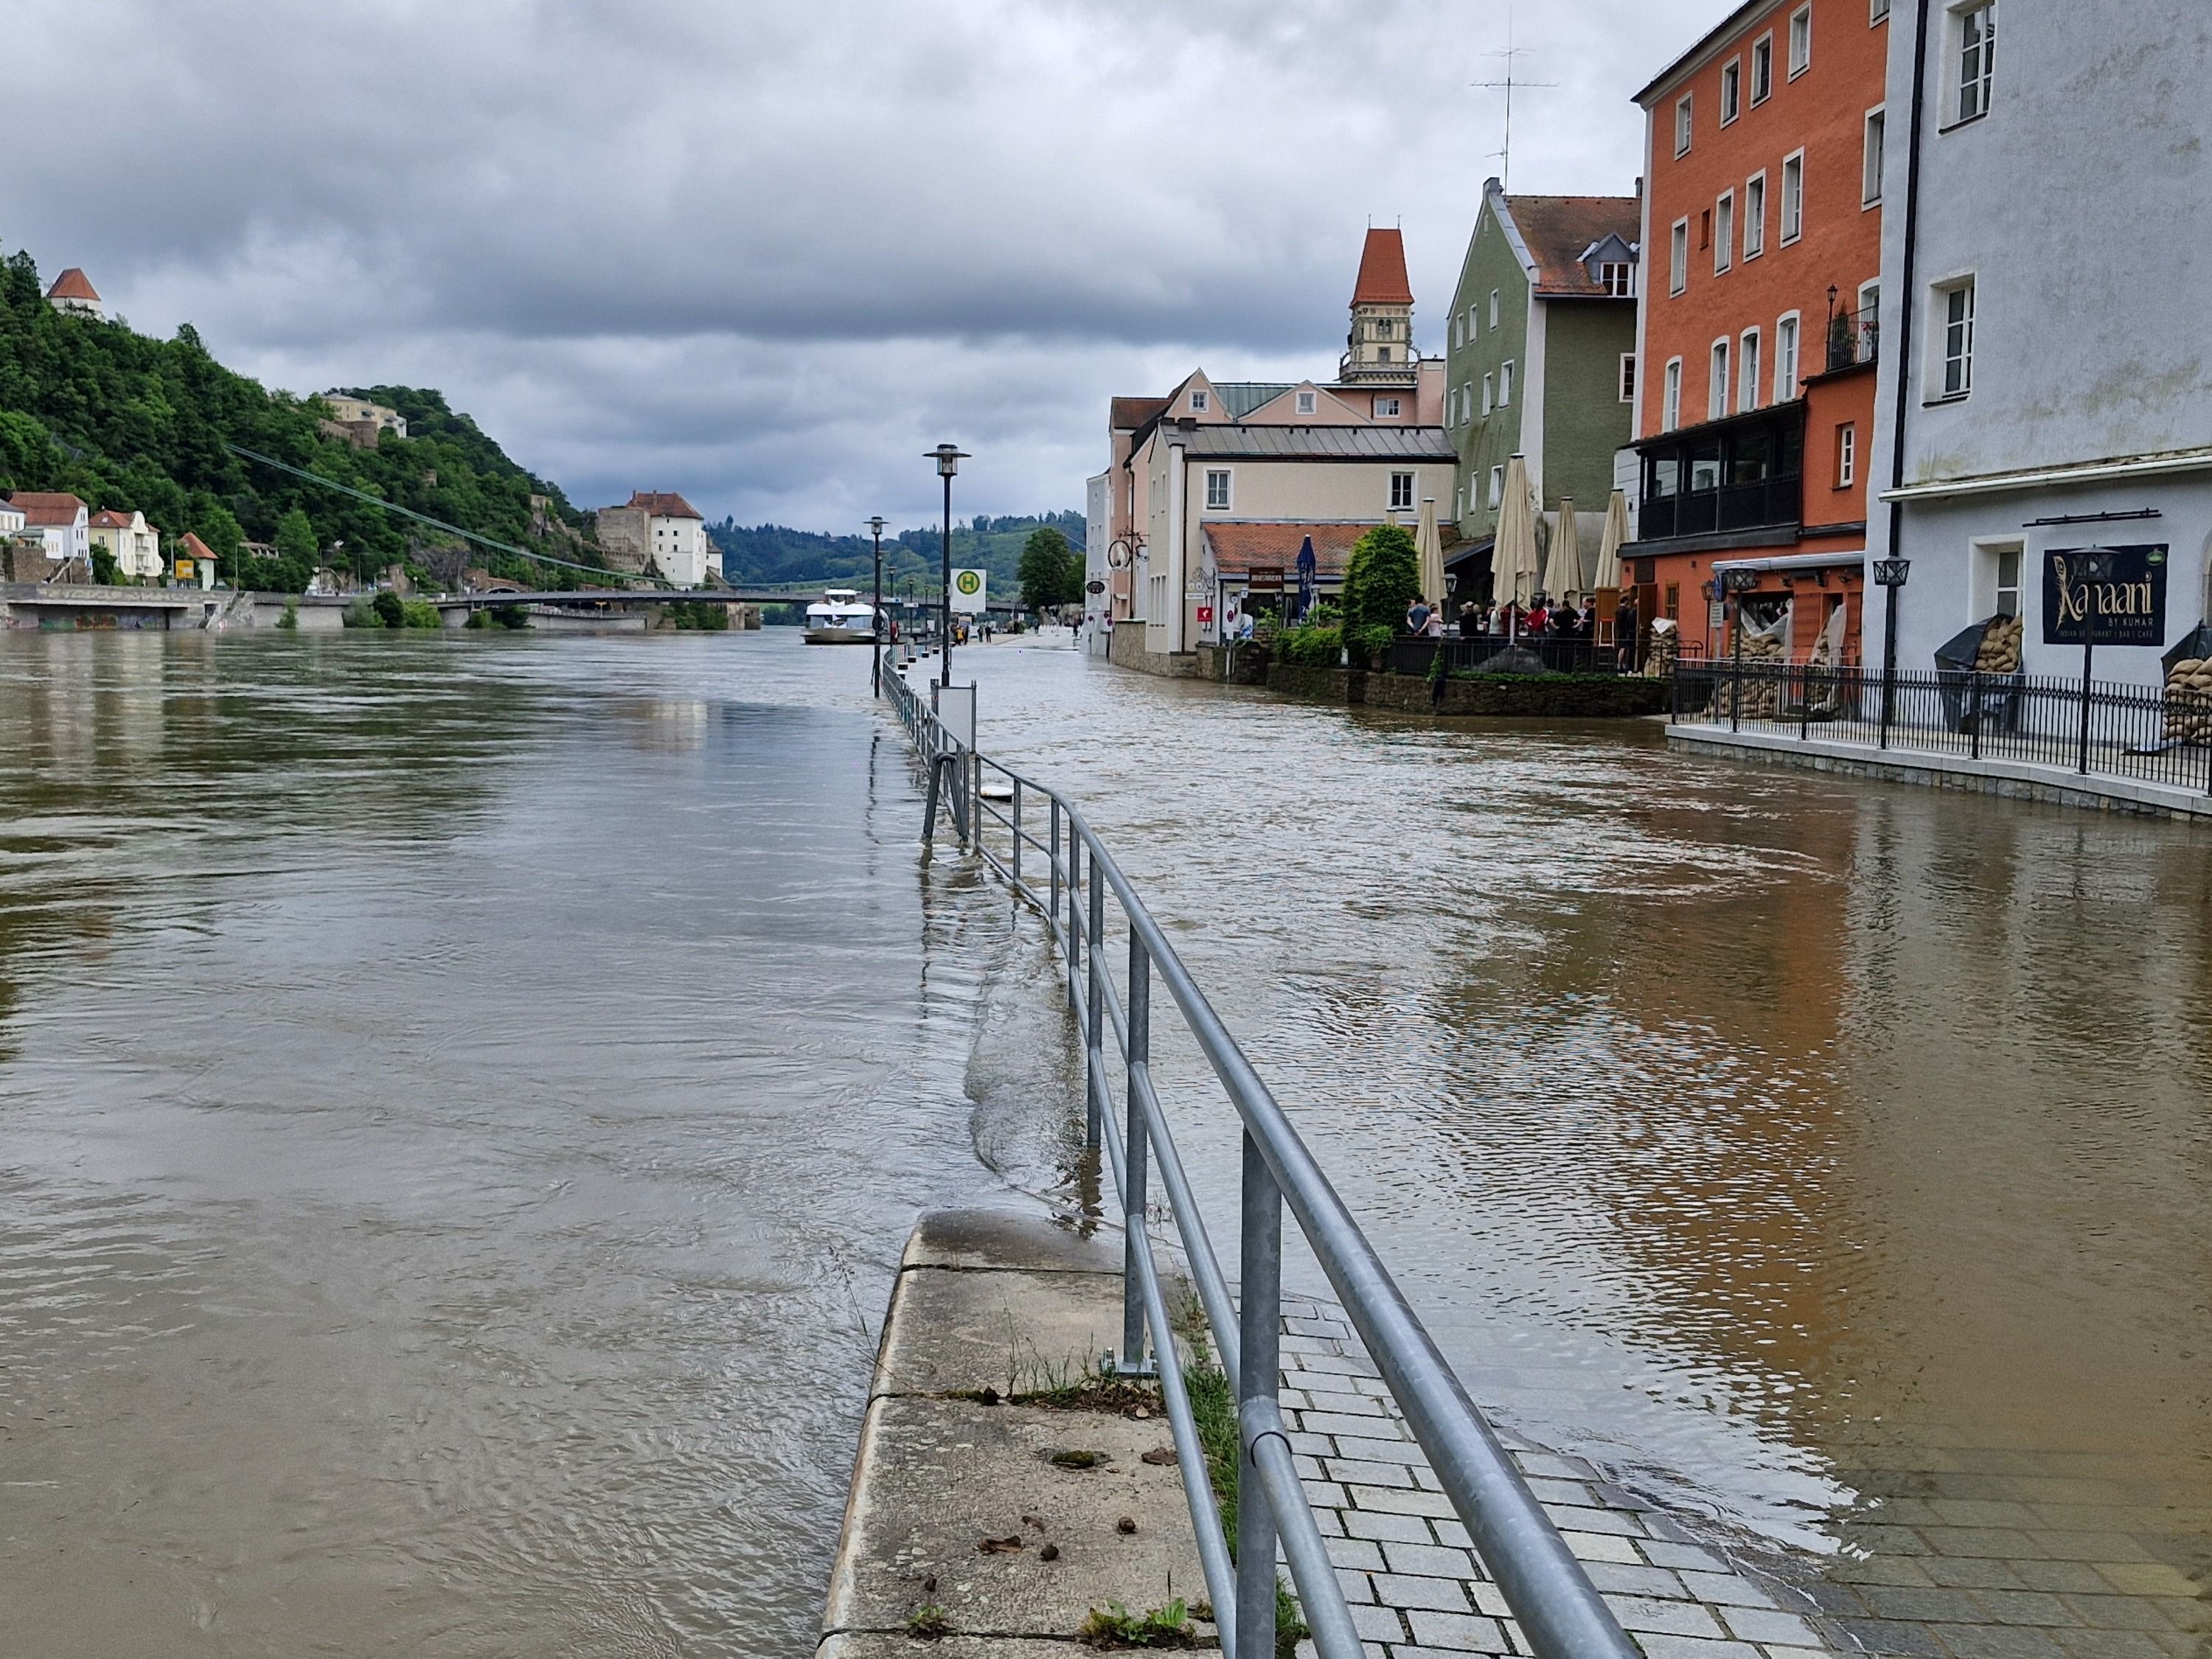 Die Drei-Flüsse-Stadt Passau in Niederbayern hat aufgrund des Starkregens ebenfalls mit erheblichem Hochwasser zu kämpfen. Der Pegelstand der Donau stieg am Sonntag auf mehr als 7,70 Meter, wie der Hochwassernachrichtendienst mitteilte. Zahlreiche Straßen und Plätze in Stadtgebiet stehen unter Wasser.